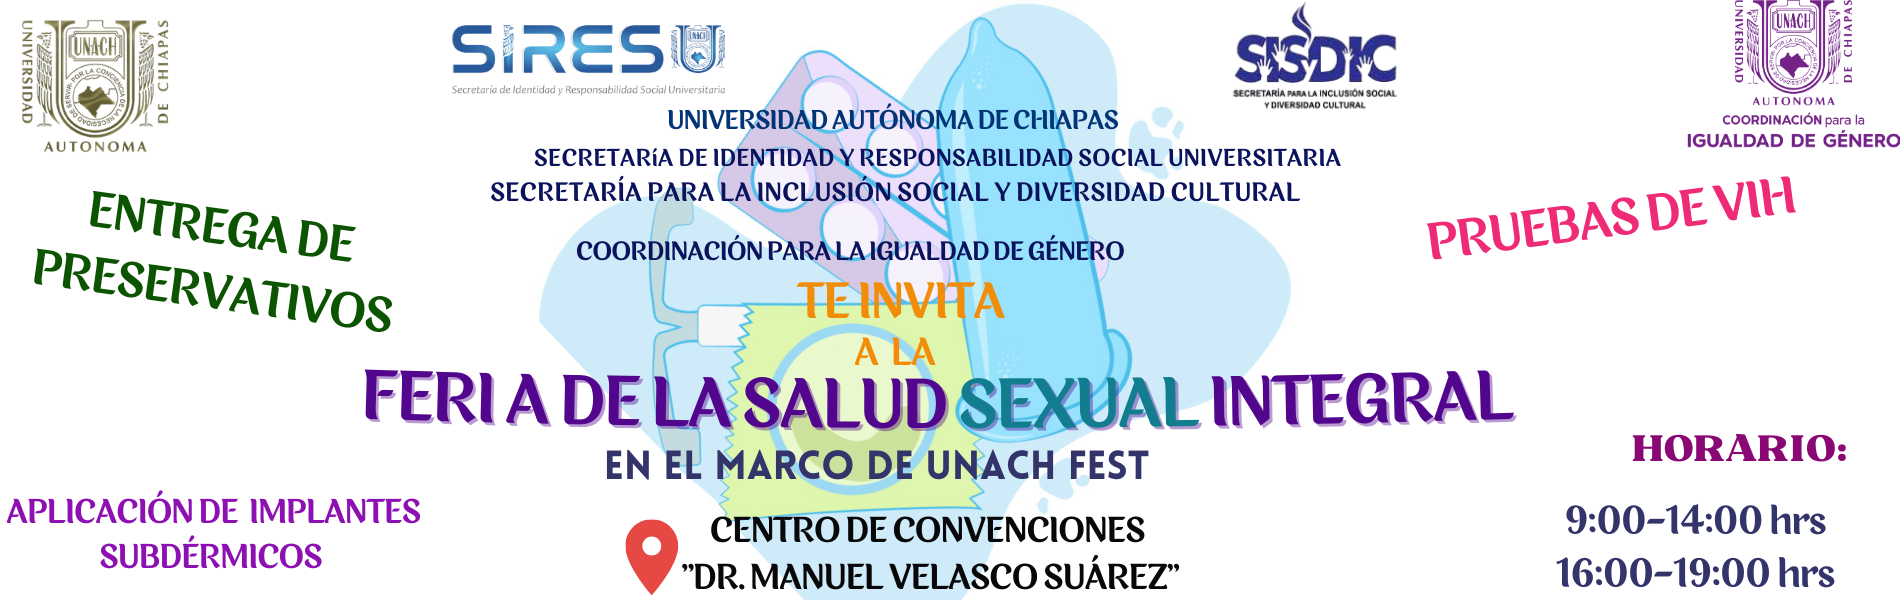 Portada Feria de la Salud Sexual Integral (FESI)